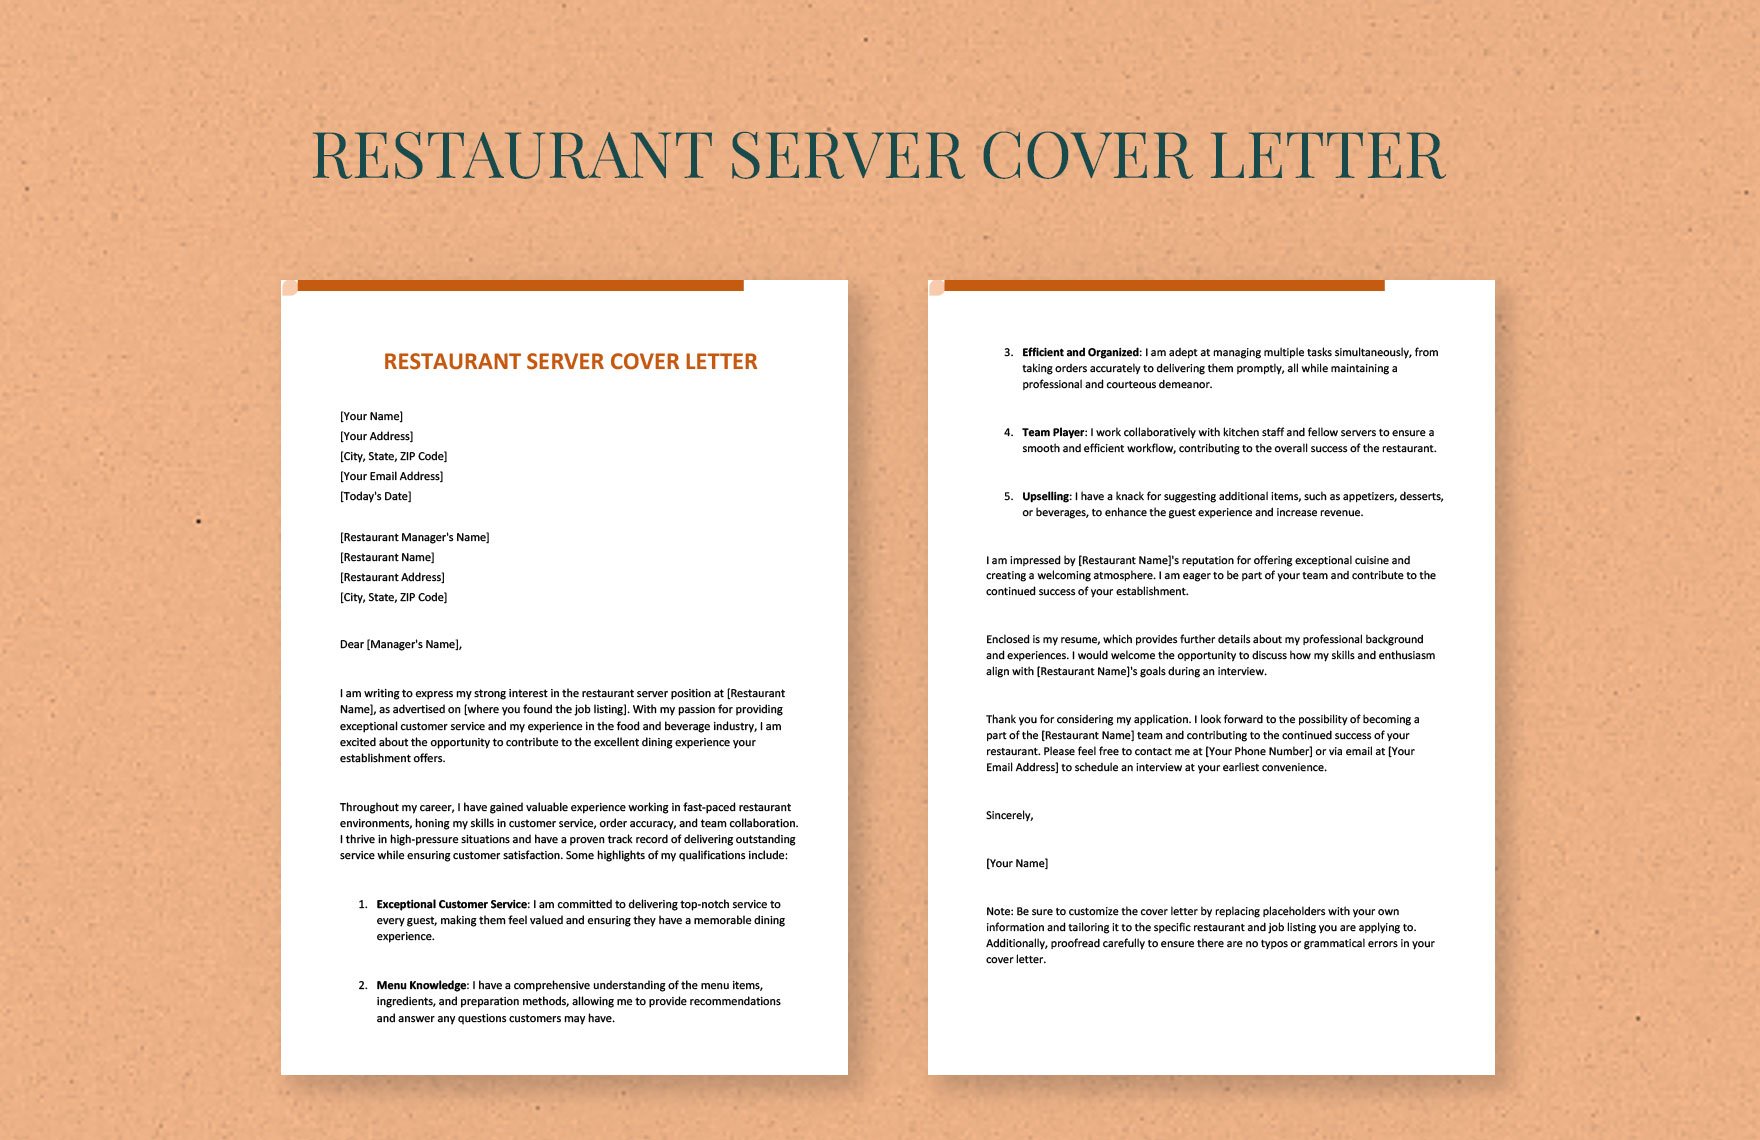 Restaurant Server Cover Letter in Word, Google Docs